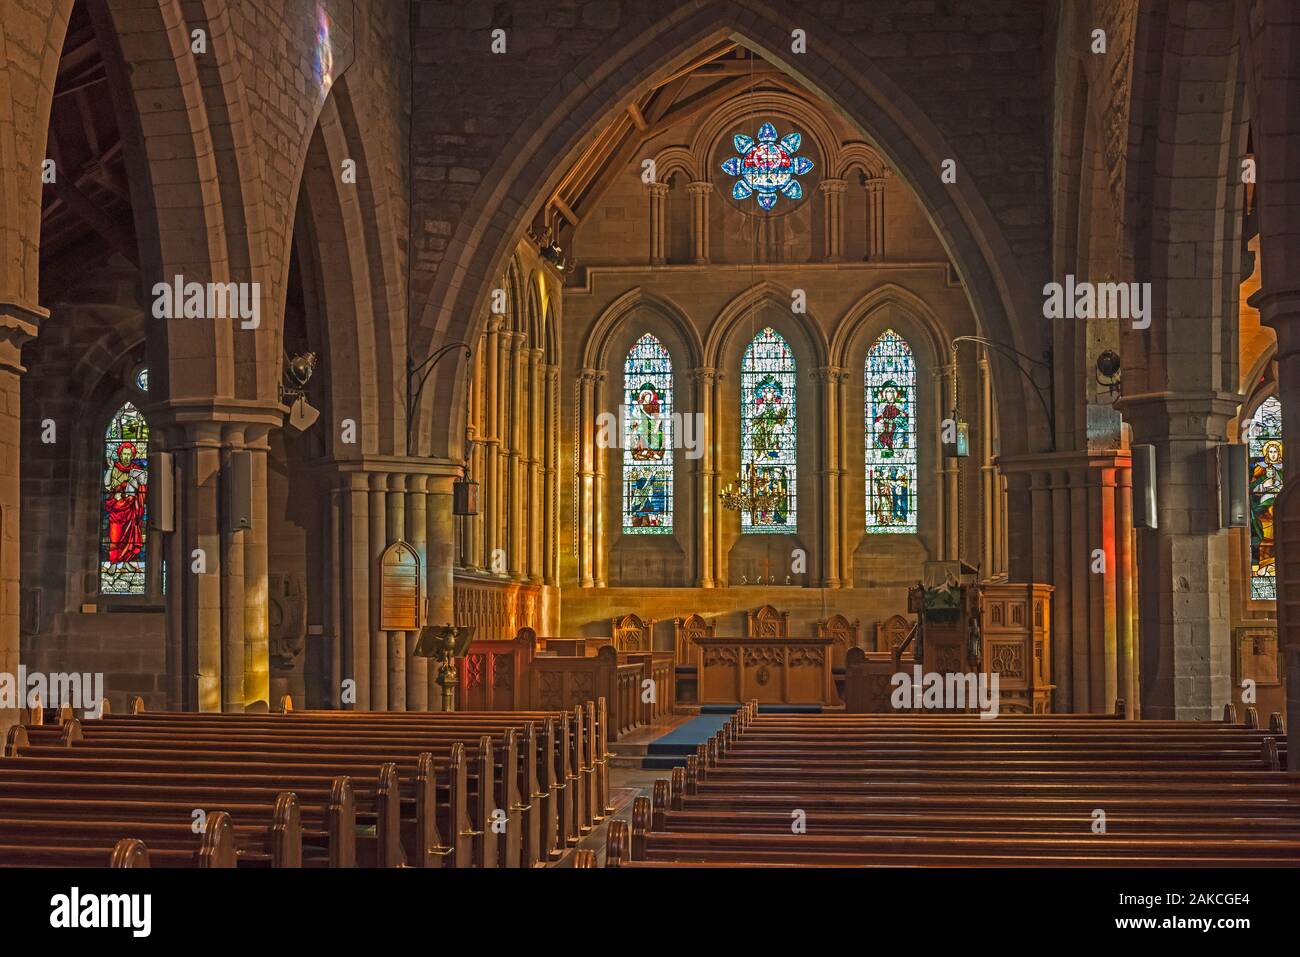 Intérieur de la cathédrale de Brechin, Angus, Scotland, UK montrant l'aile avec chœur, modifier, chorale, bancs et des voûtes gothiques. Banque D'Images